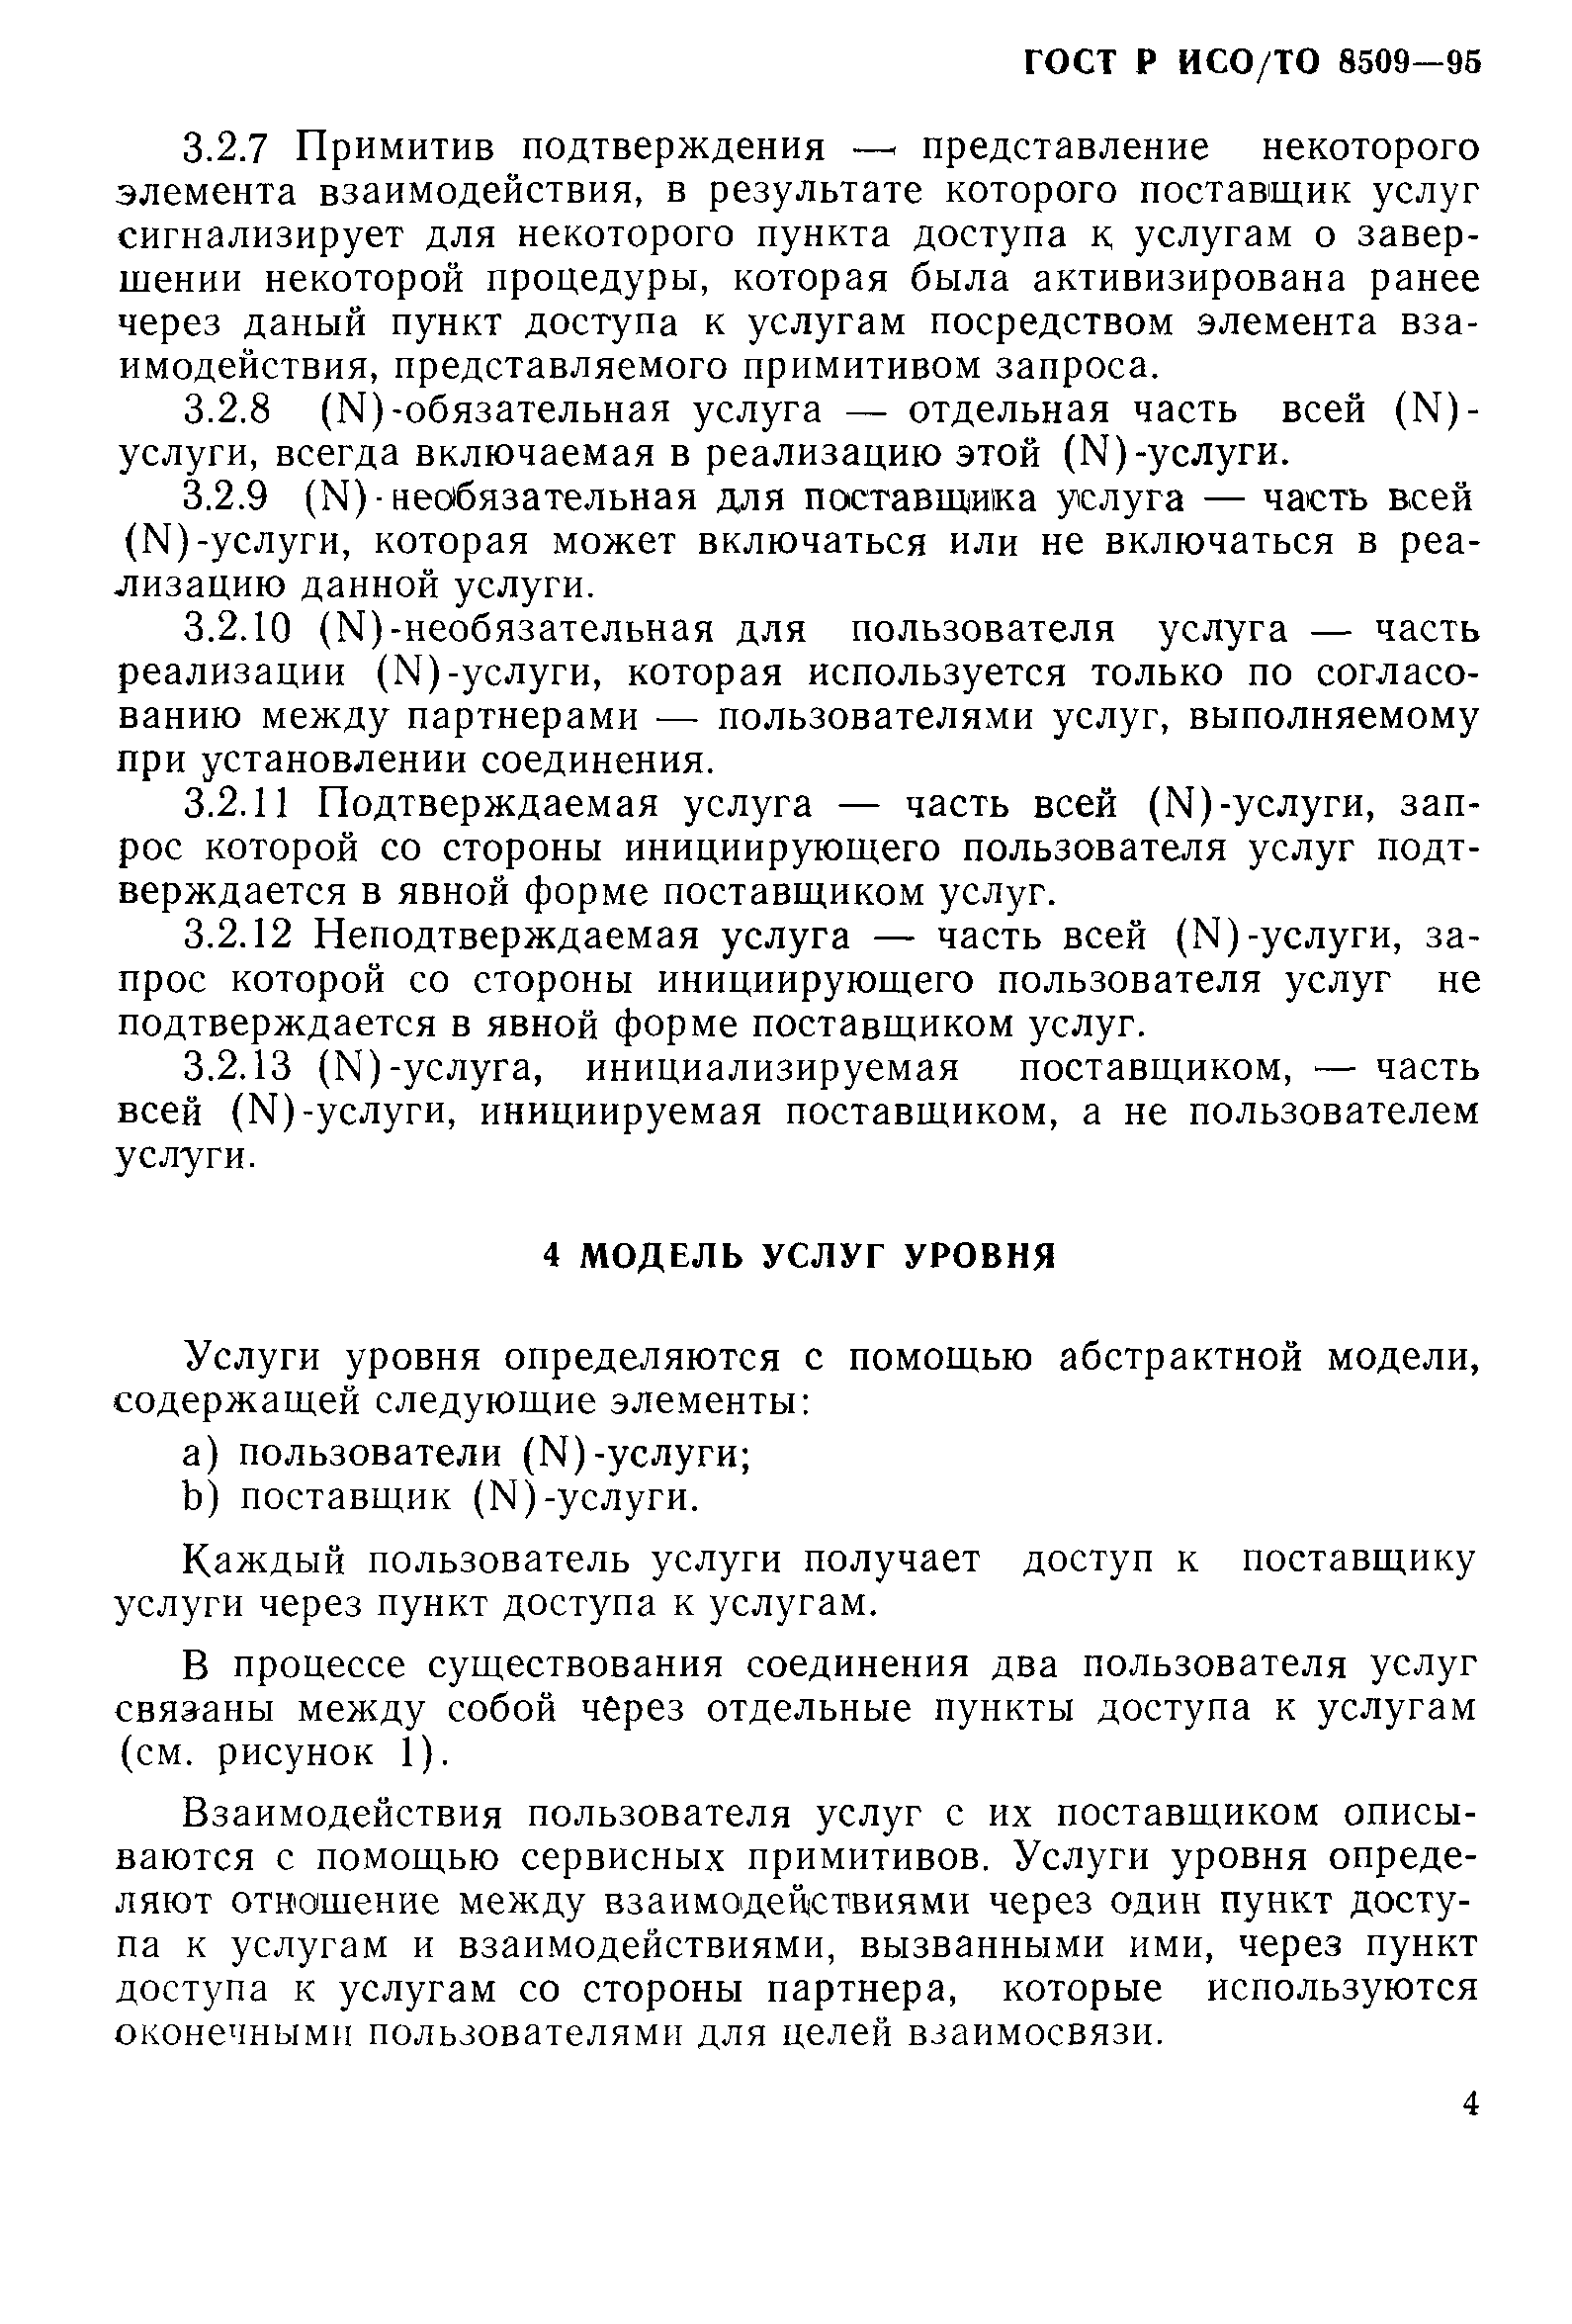 ГОСТ Р ИСО/ТО 8509-95